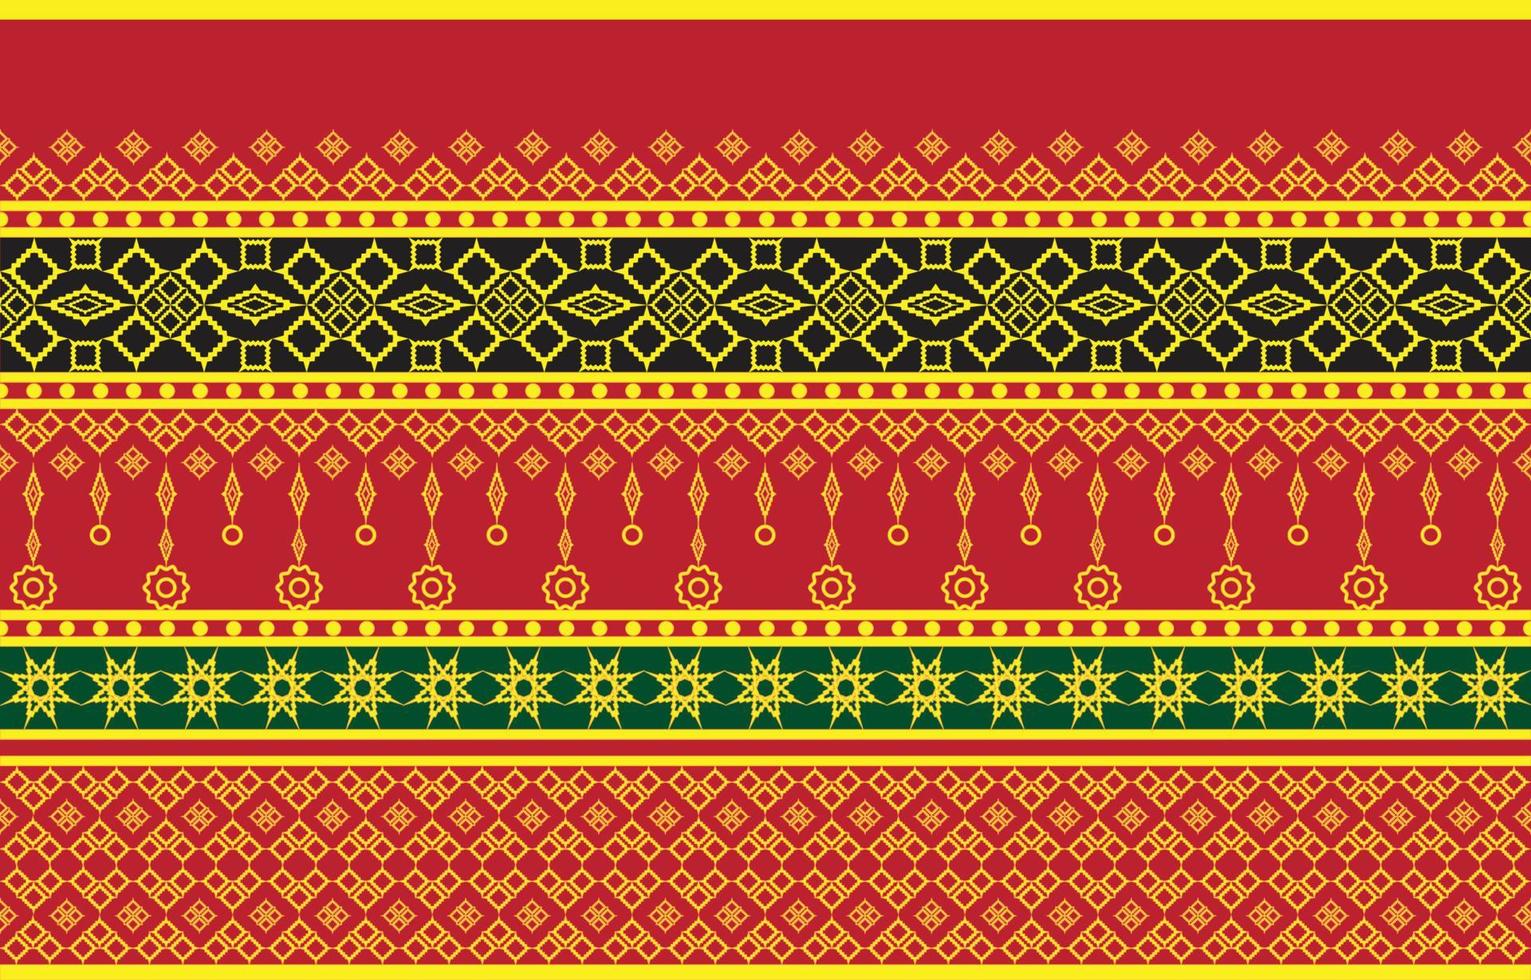 thaise zijdepatrooncultuur van thailand vector